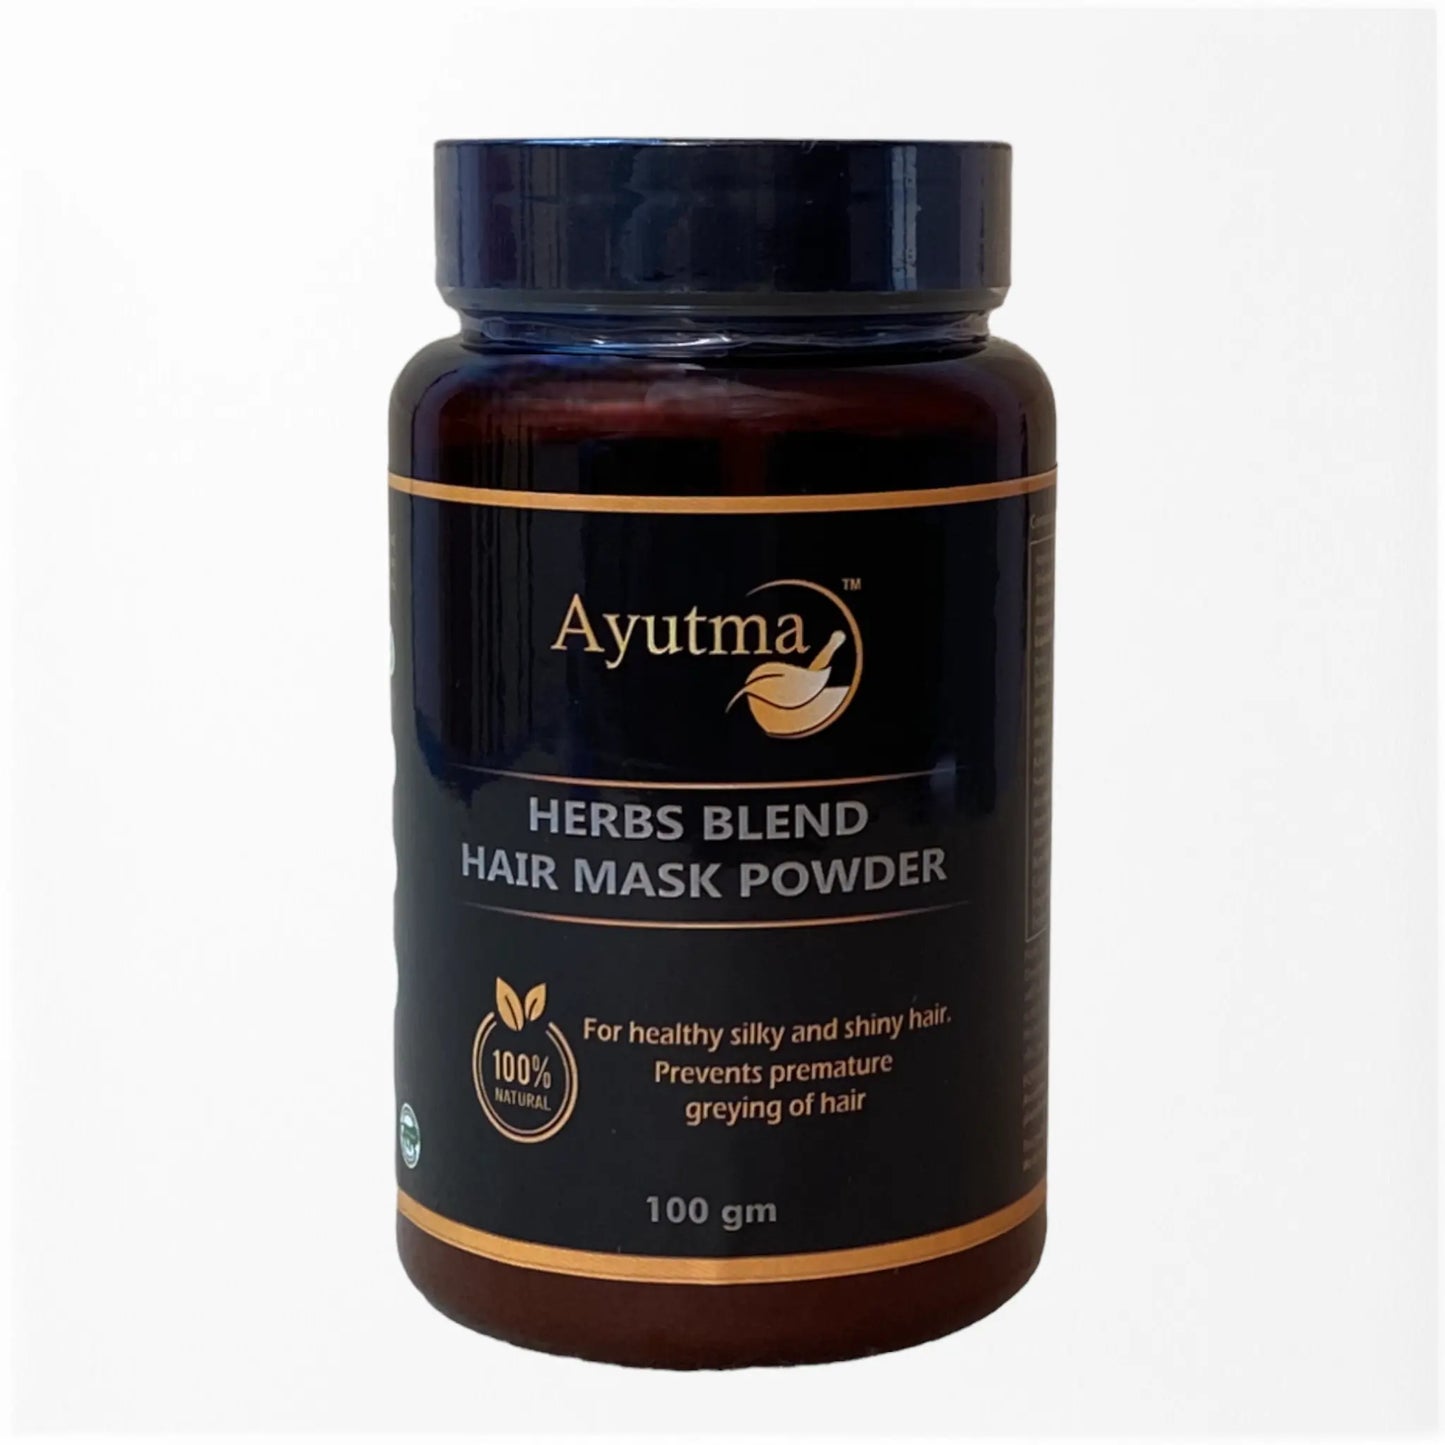 Herbs Blend Hair Mask Powder (100gm)